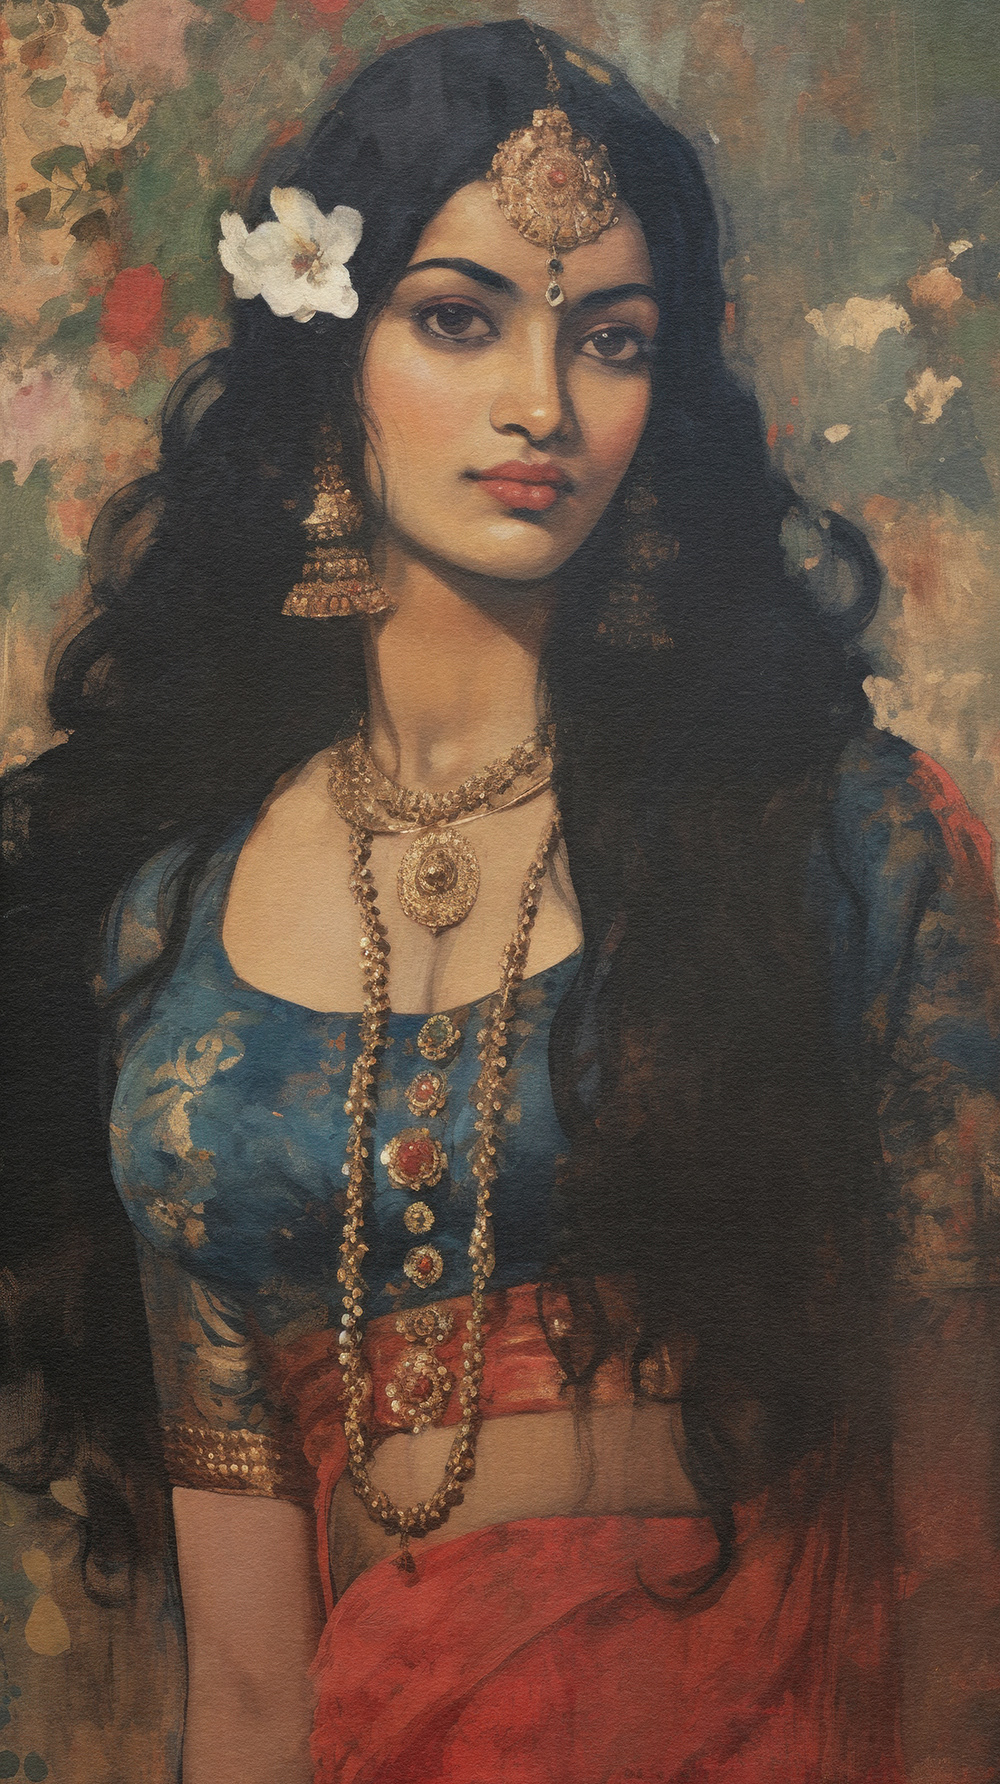 beauty Beautiful beautiful woman beautiful girl Indian woman India portrait beautiful portrait beautiful woman portrait indian woman art